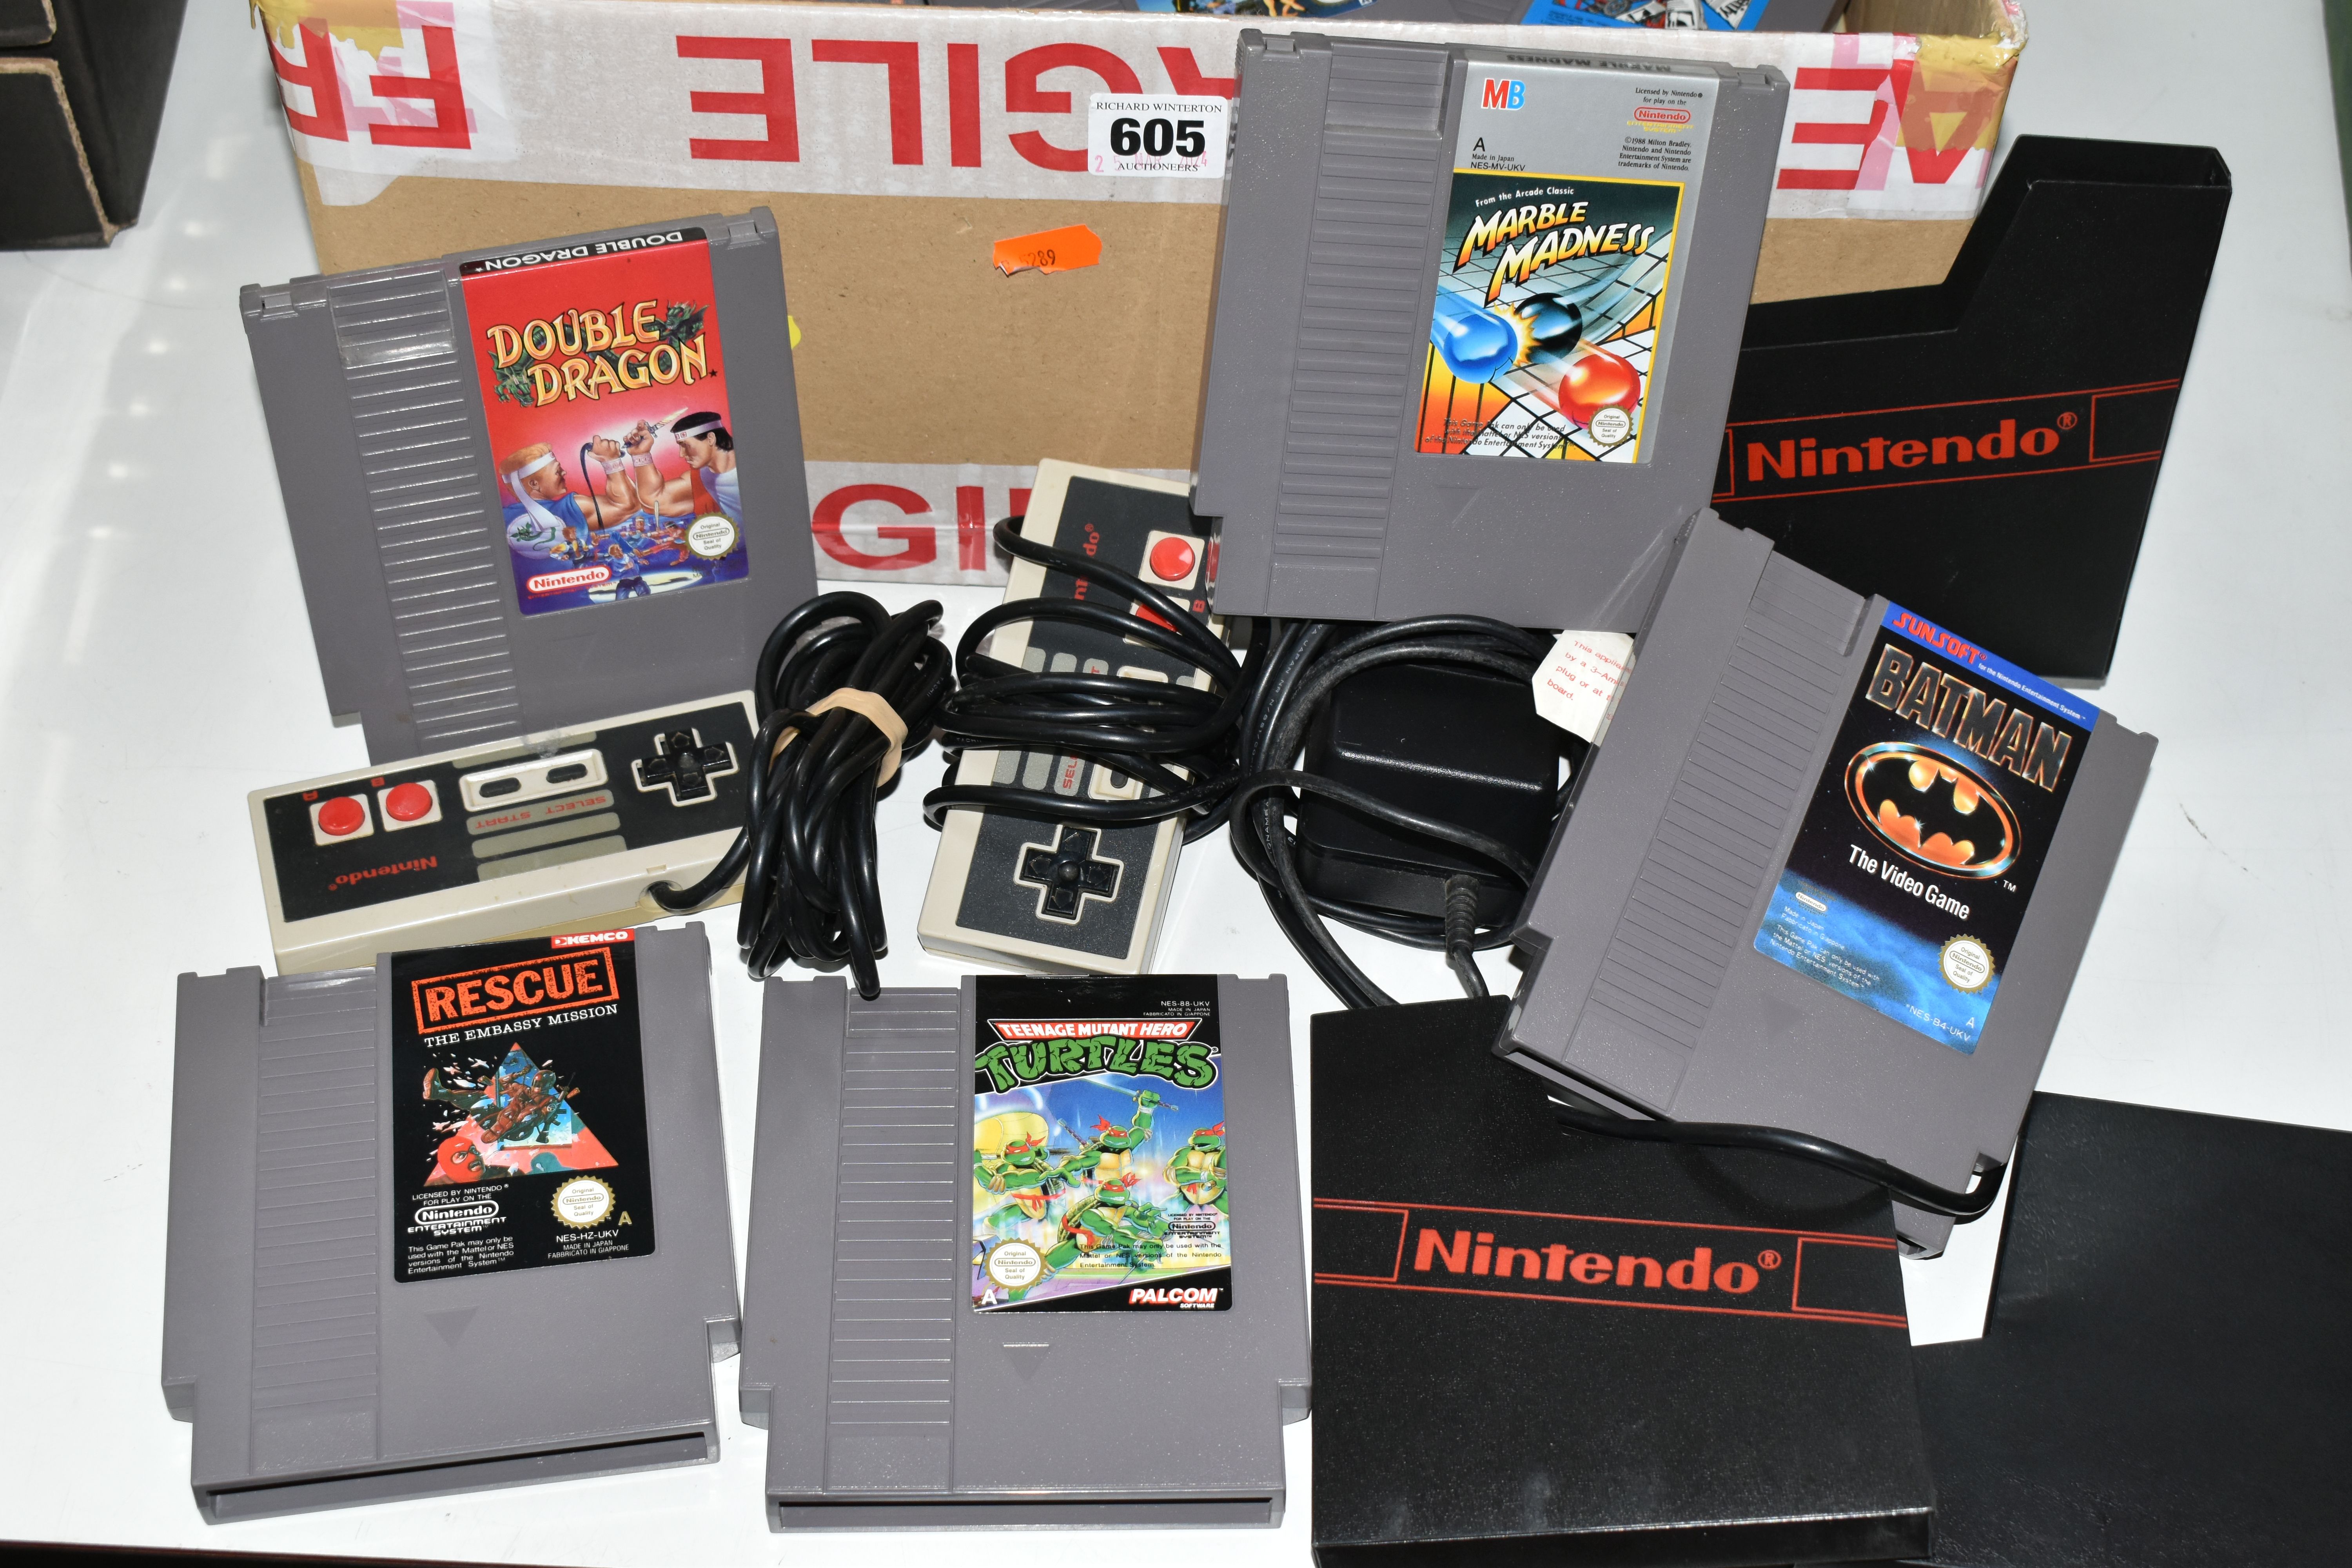 NINTENDO NES CONSOLE AND GAMES, includes Super Mario Bros, Super Mario Bros 3, Double Dragon, - Image 2 of 5